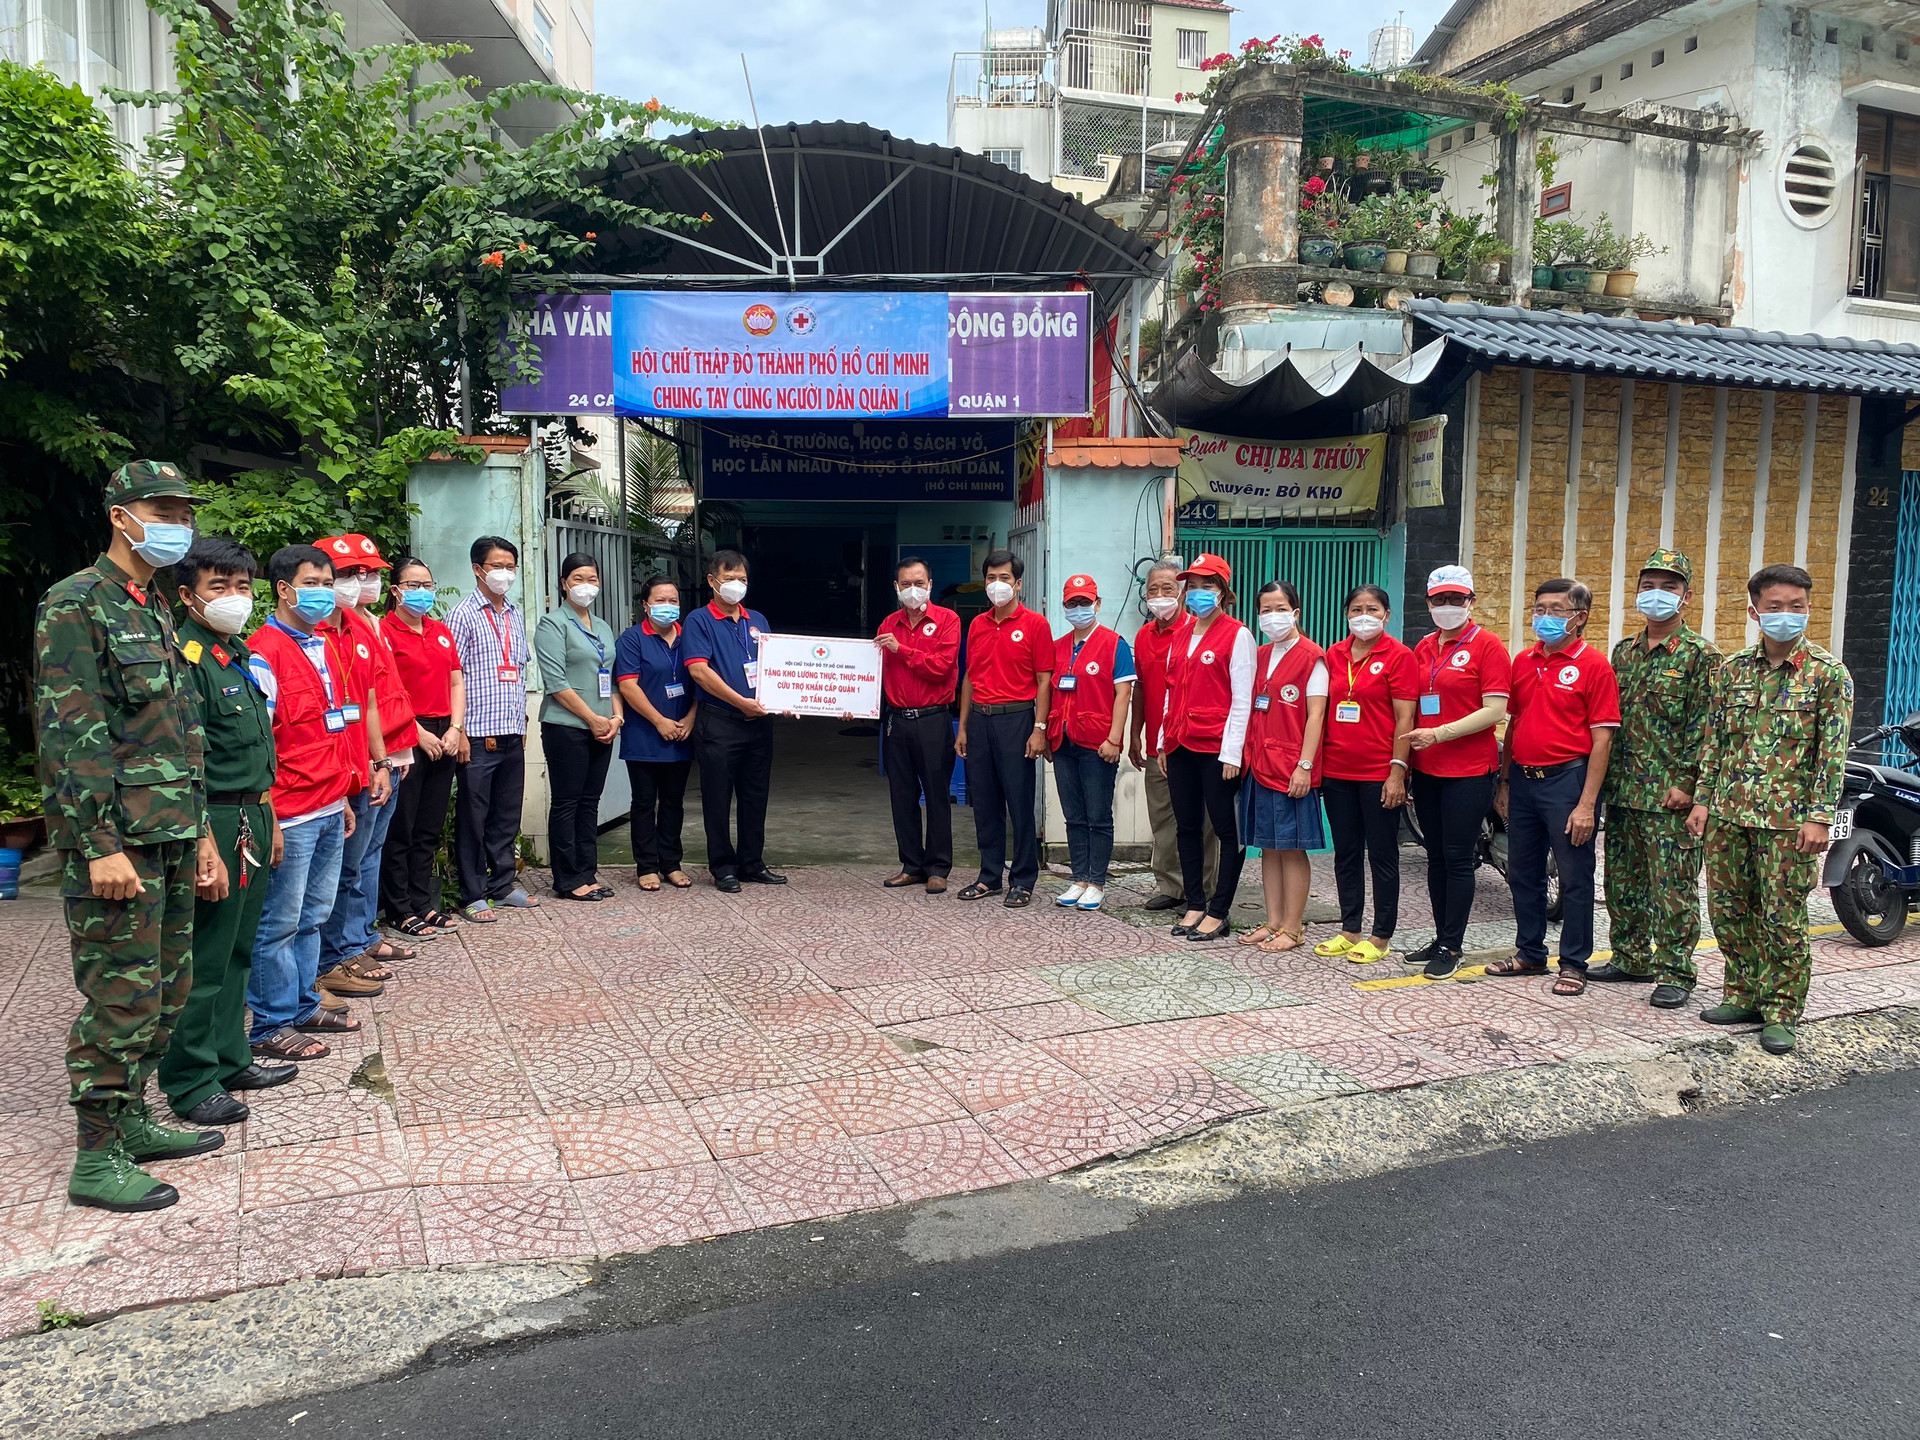 Hội Chữ thập đỏ TP Hồ Chí Minh đã trao tặng Quận 1 20 tấn gạo để chia sẻ khó khăn với bà con.